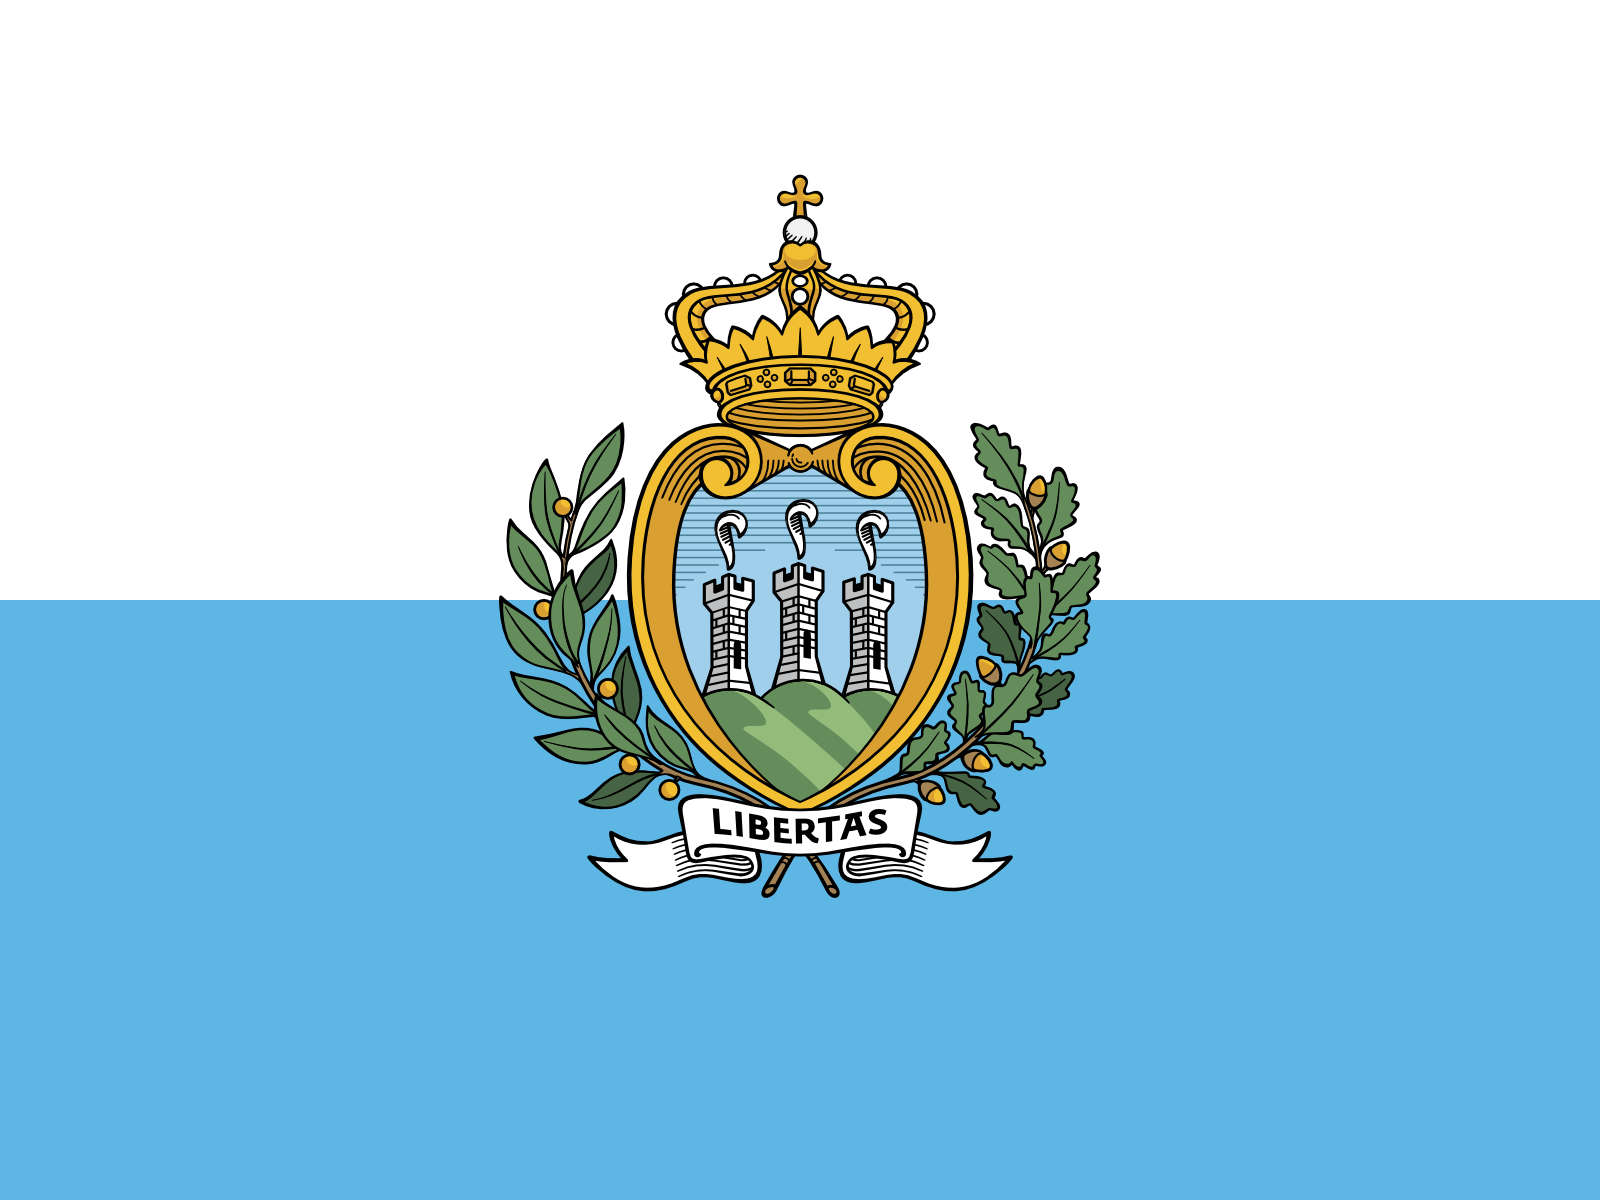 Bild der Staatsflagge San Marino - mit einer Auflösung von 1600x1200 - Europa